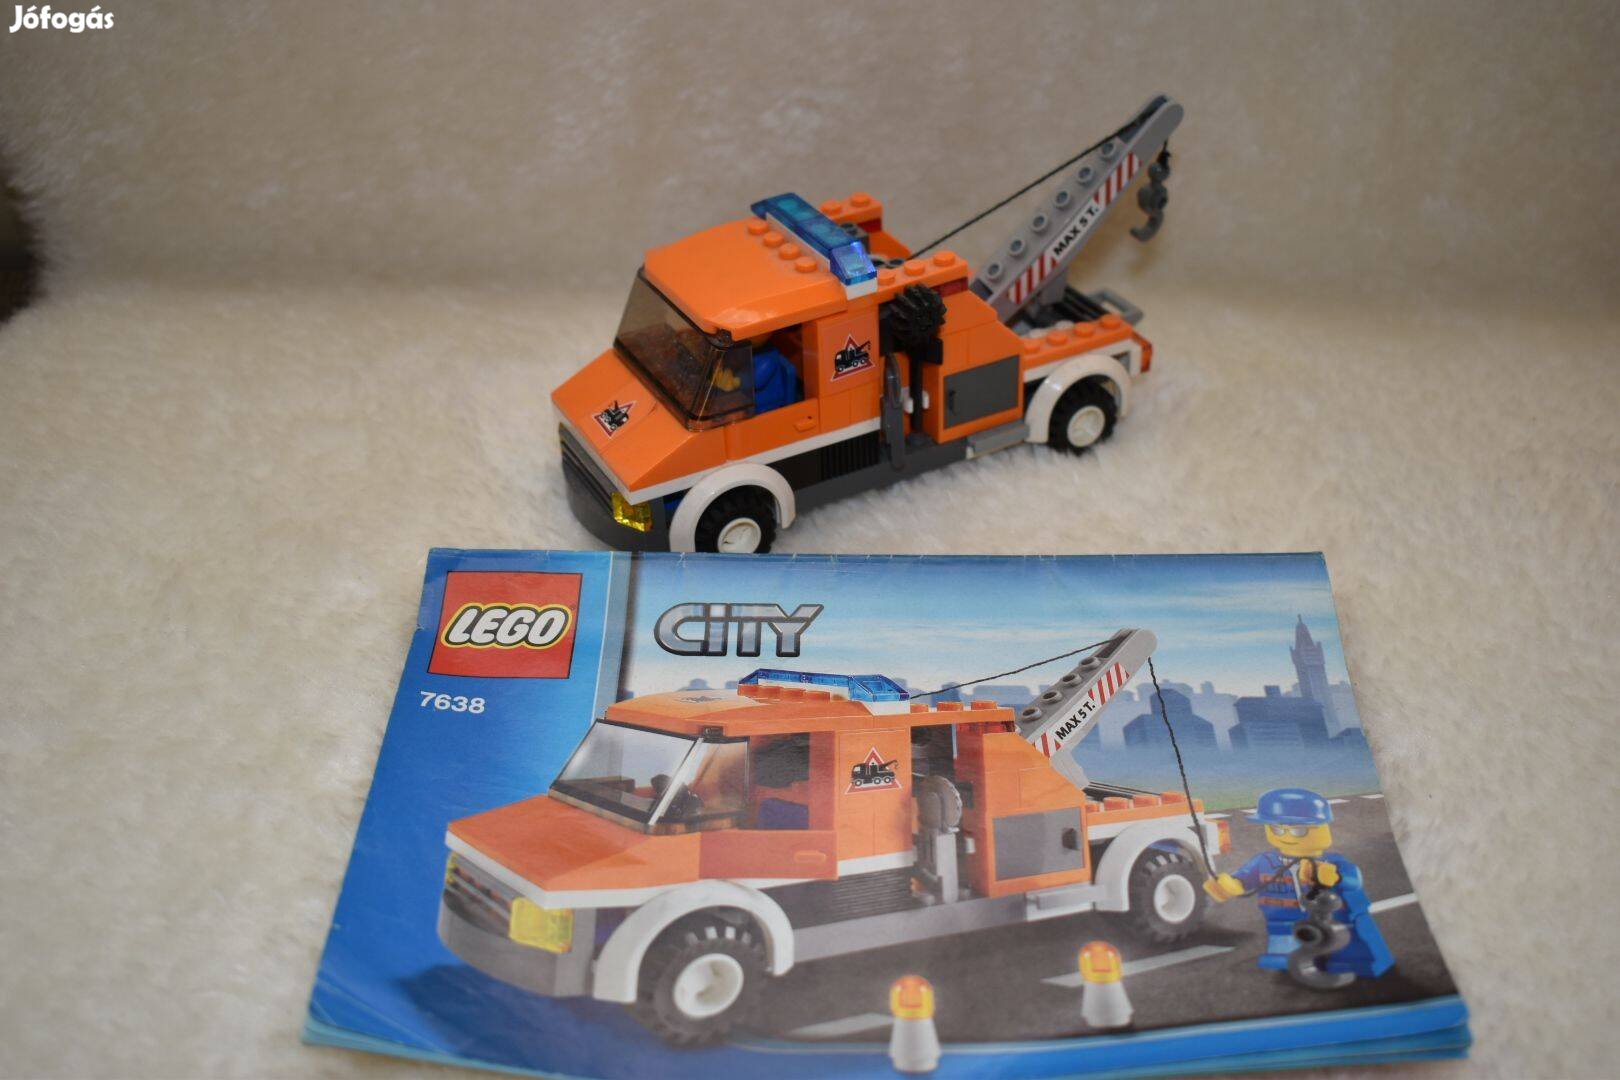 Lego City 7638 (Vontató autó)